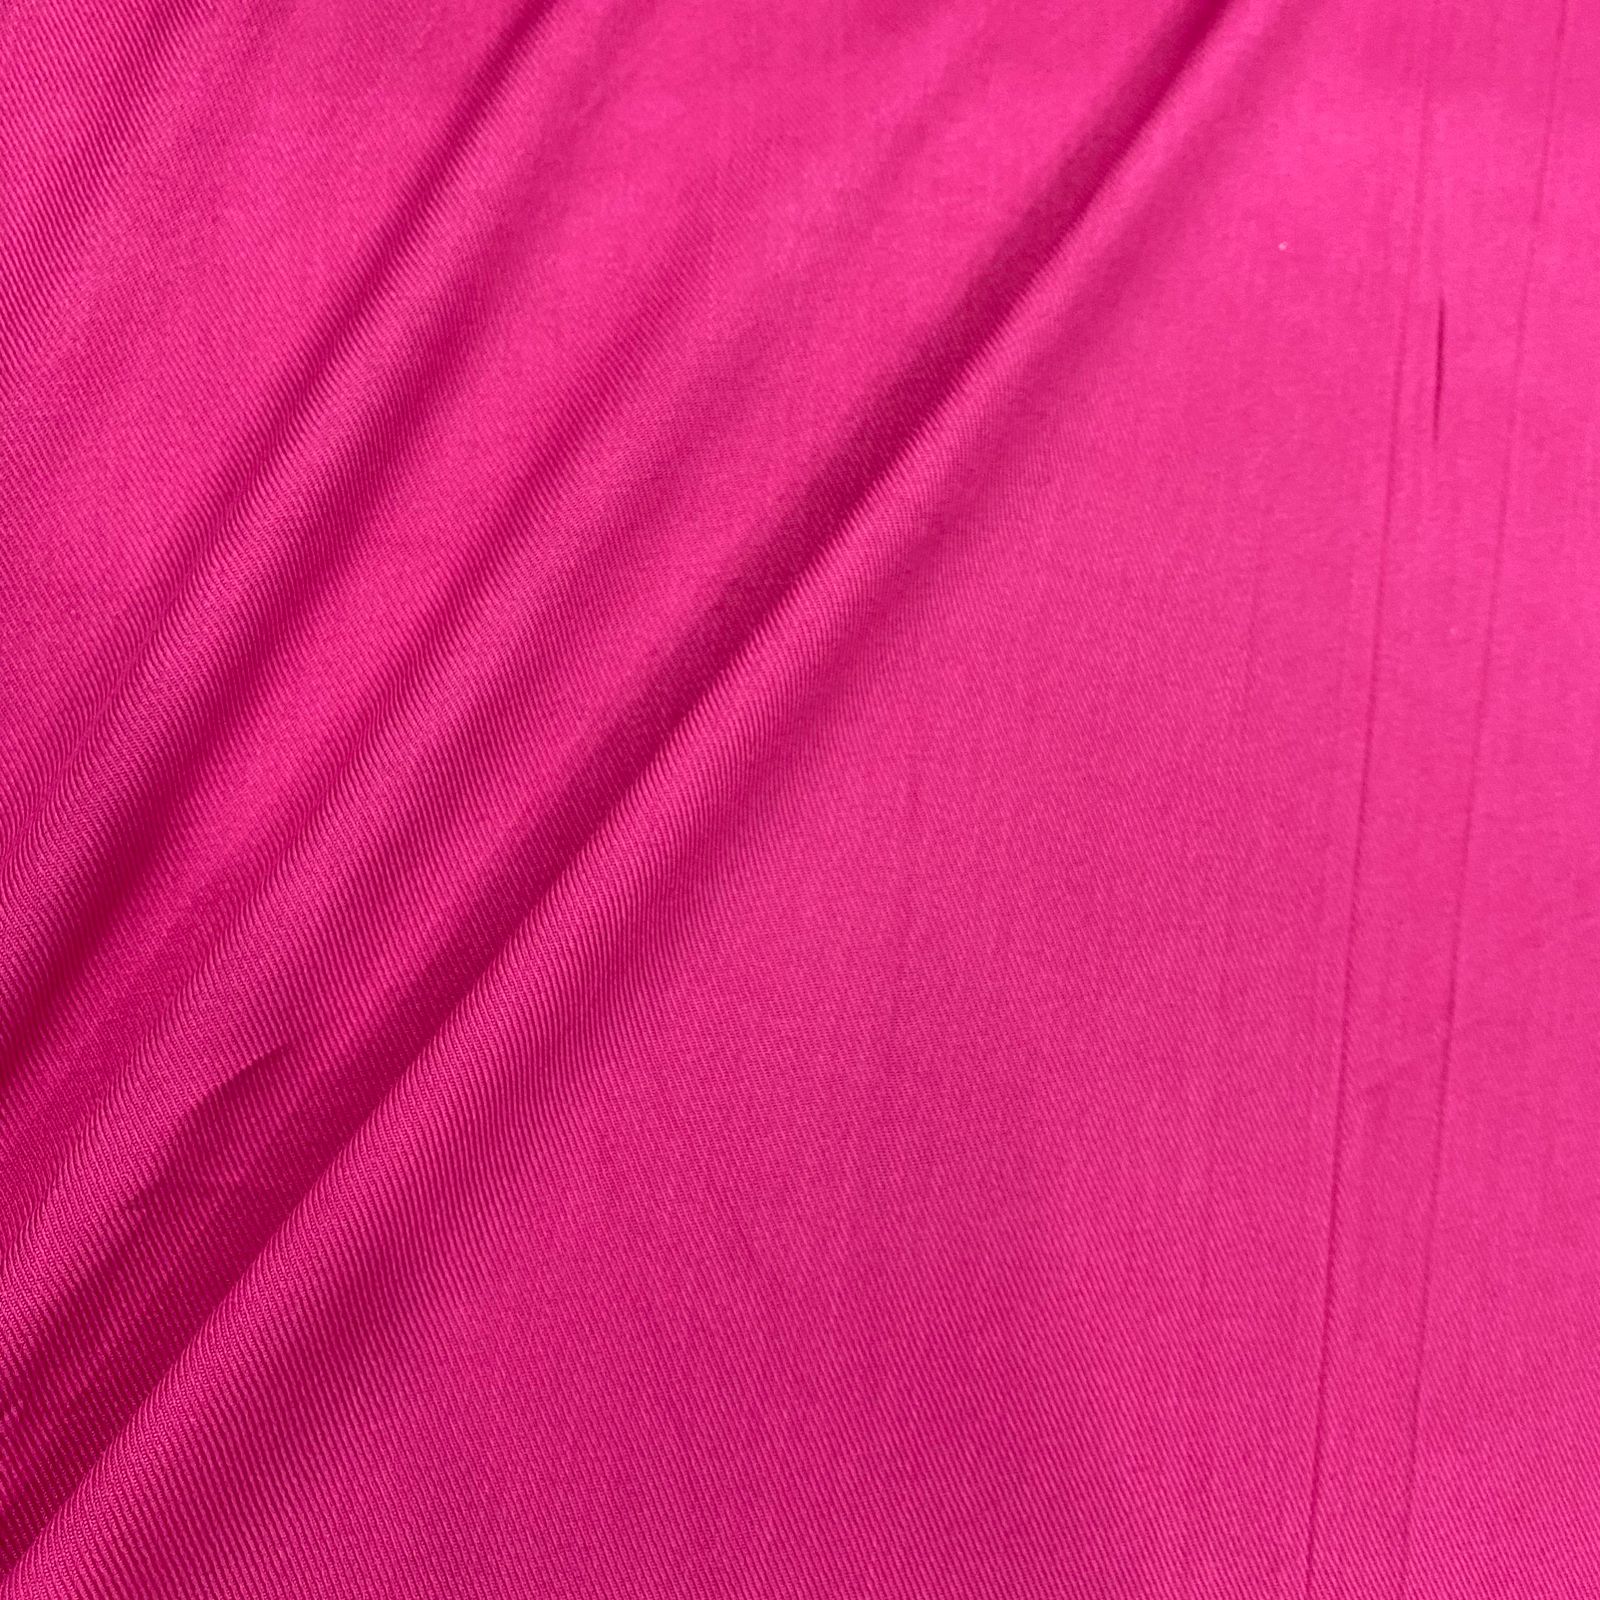 Tecido viscose rayon estampado xadrez marrom/pink